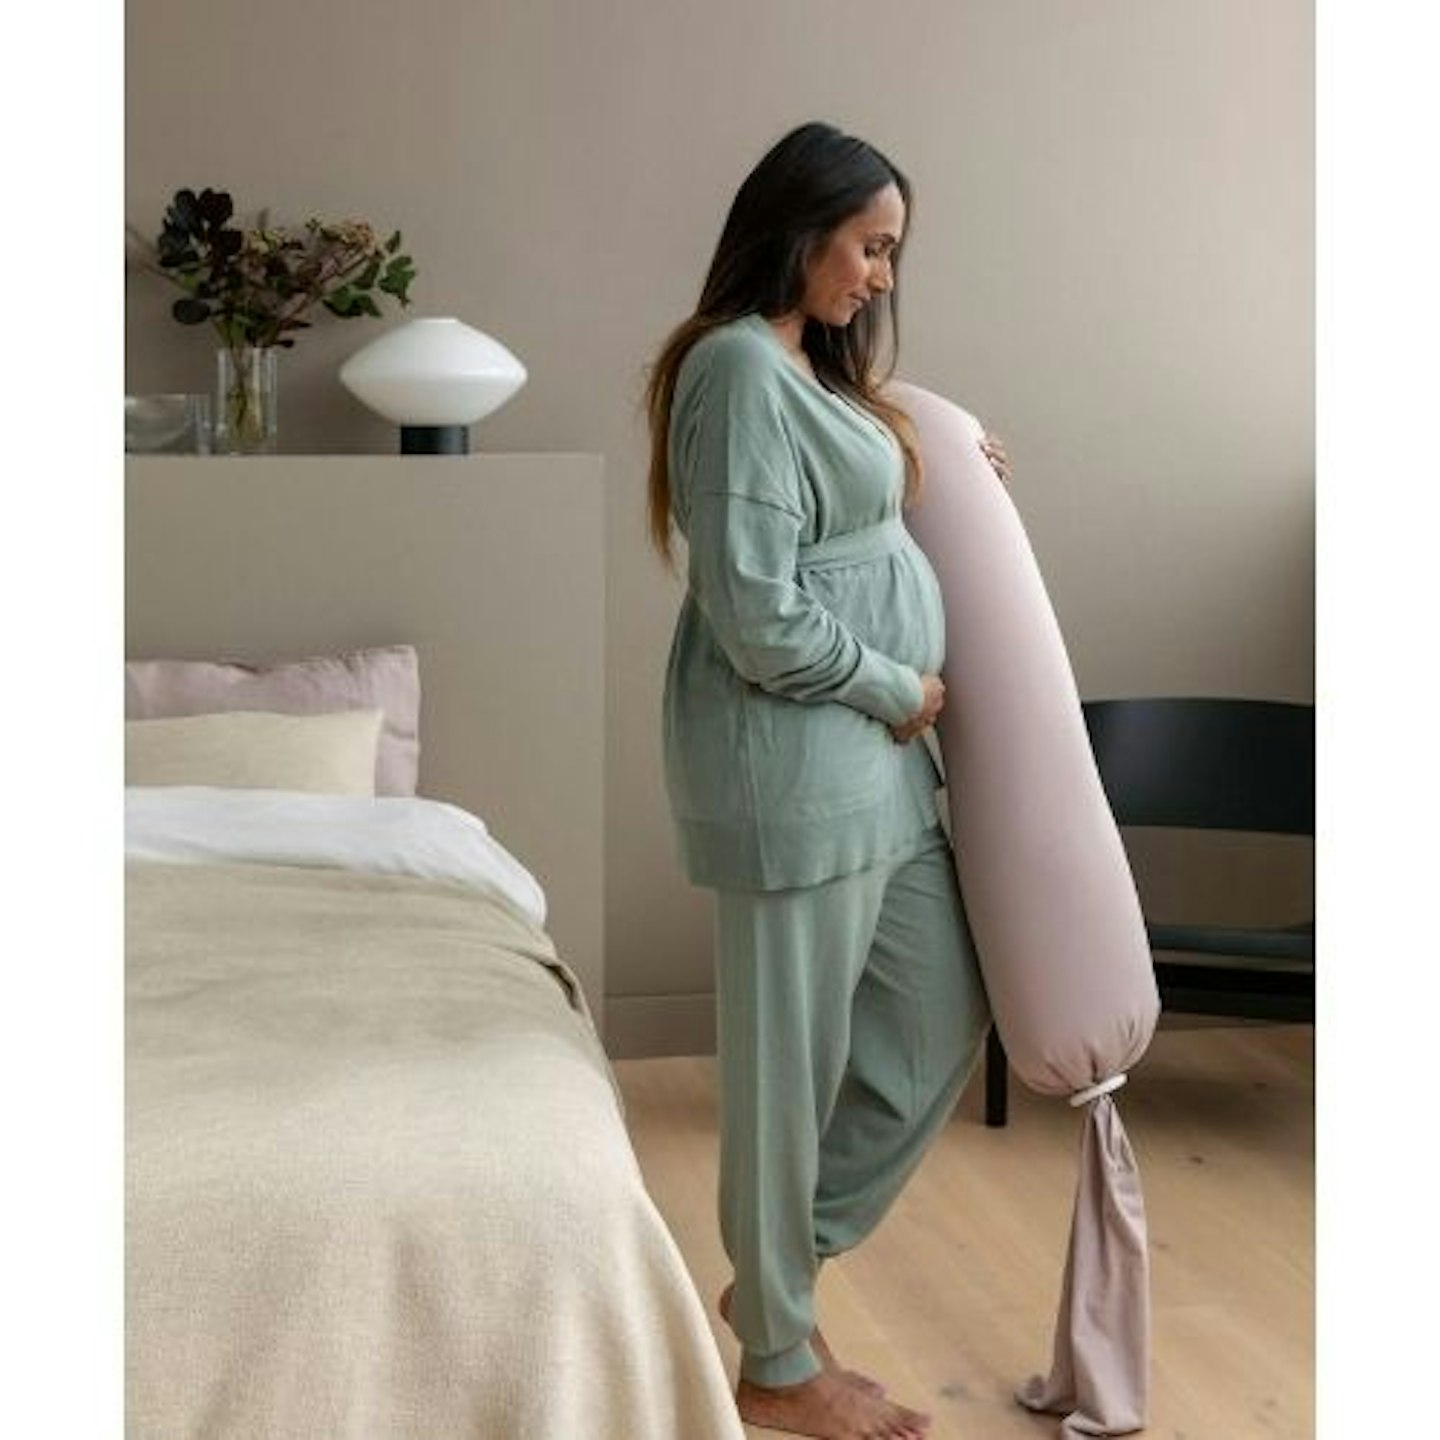 bbhugme™ Pregnancy Pillow Kit